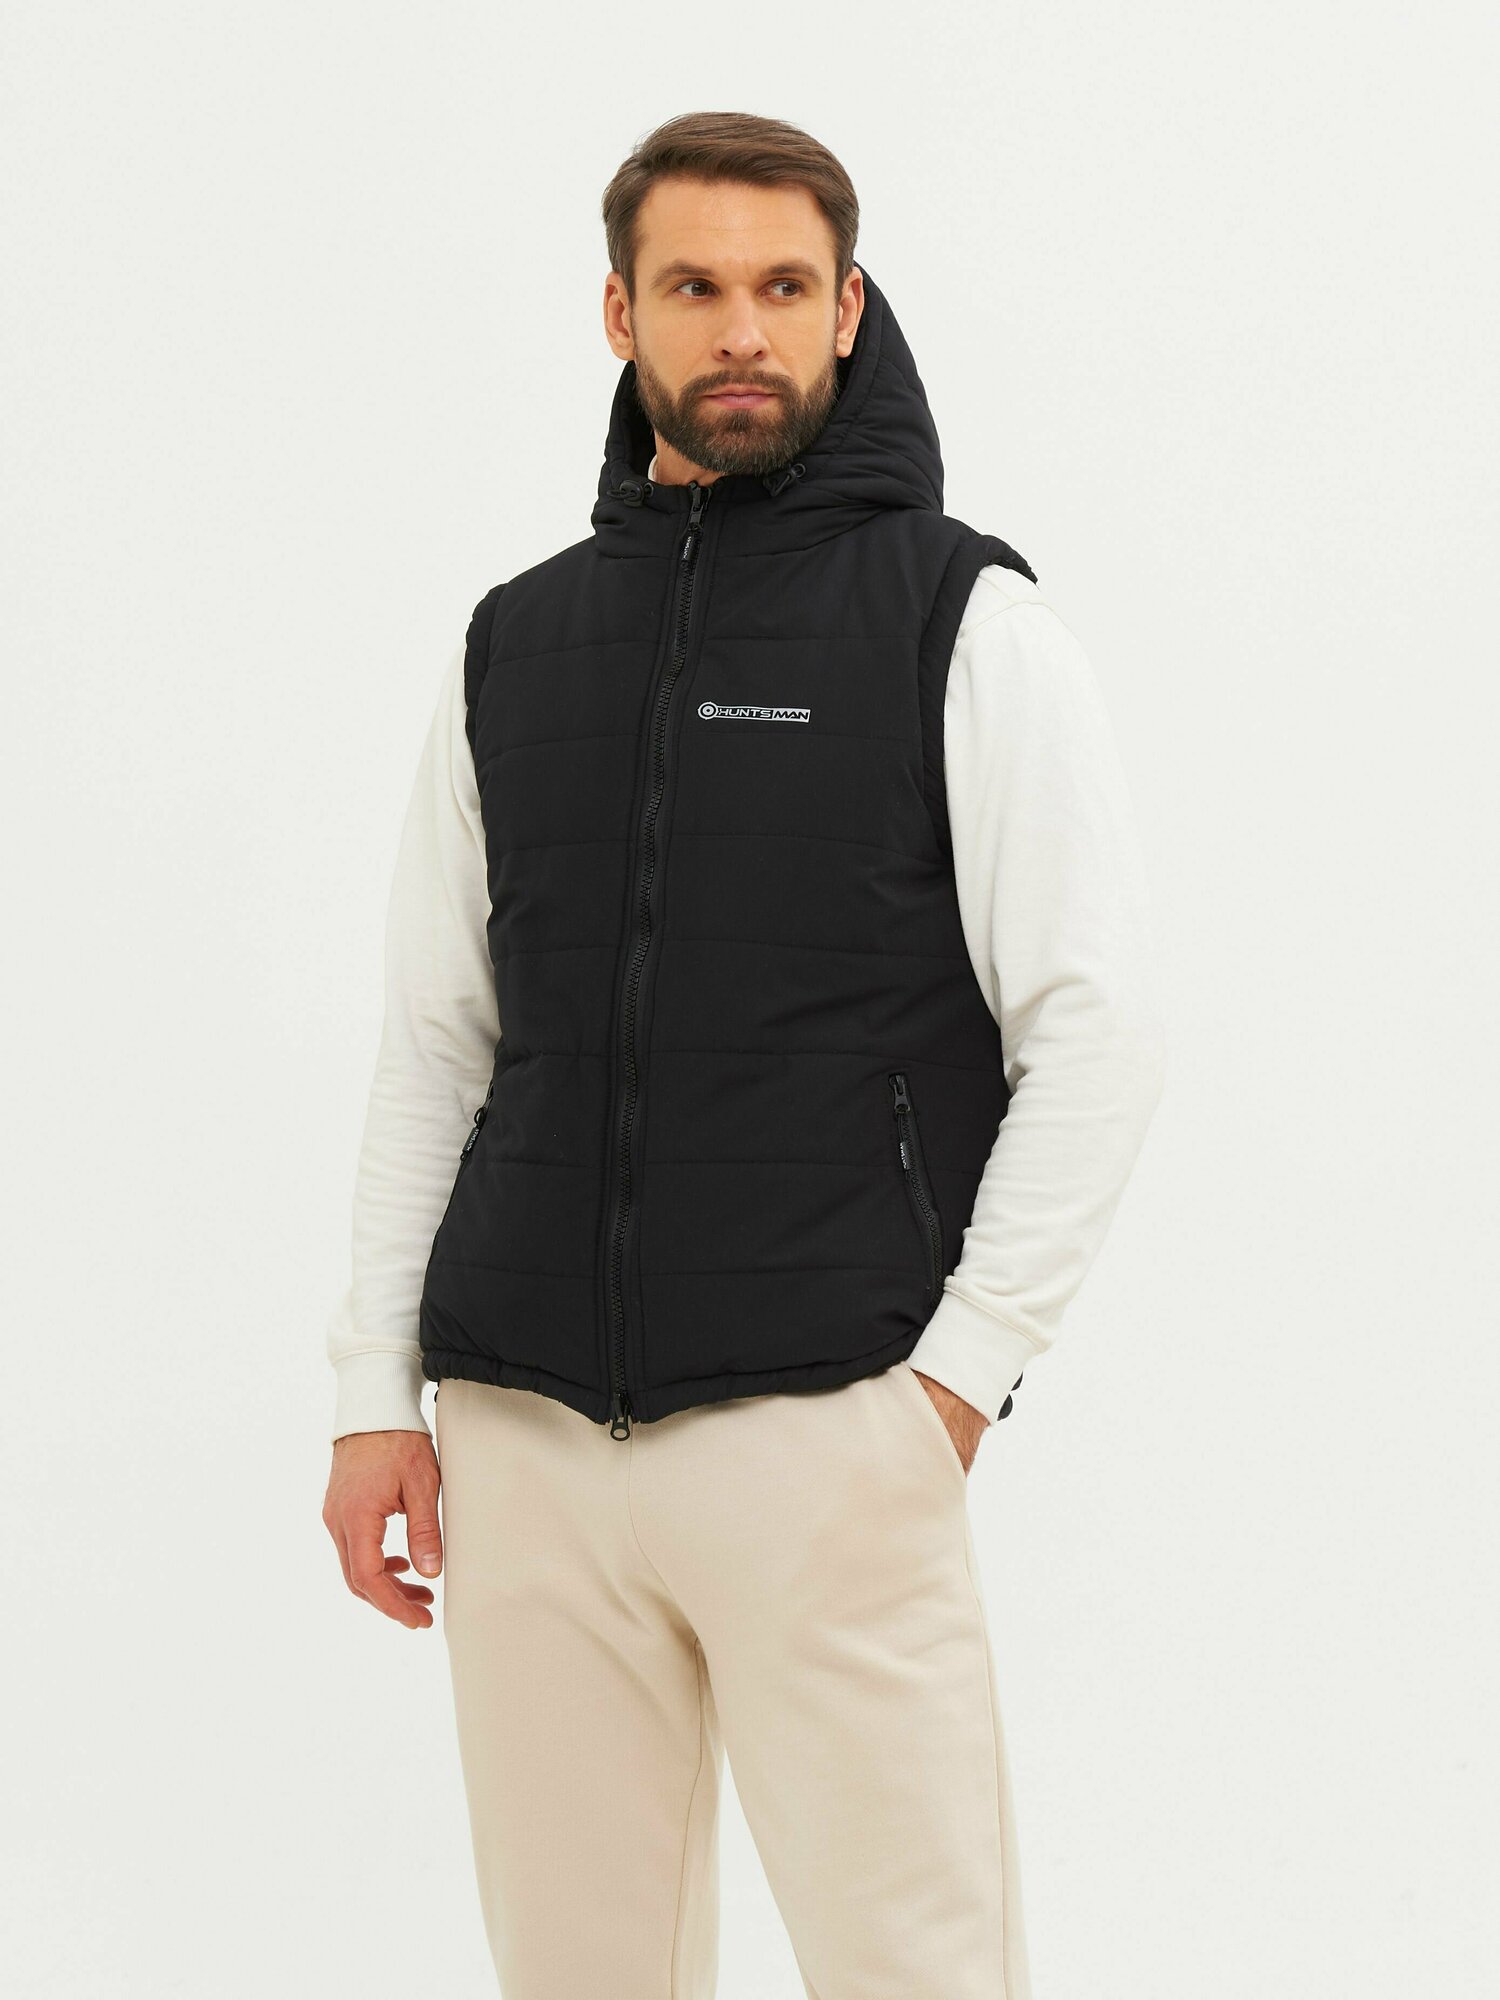 Жилет мужской утепленный демисезонный Huntsman Фристайл с карманами, капюшоном, ткань Канада, цвет черный (р.44-46/170)